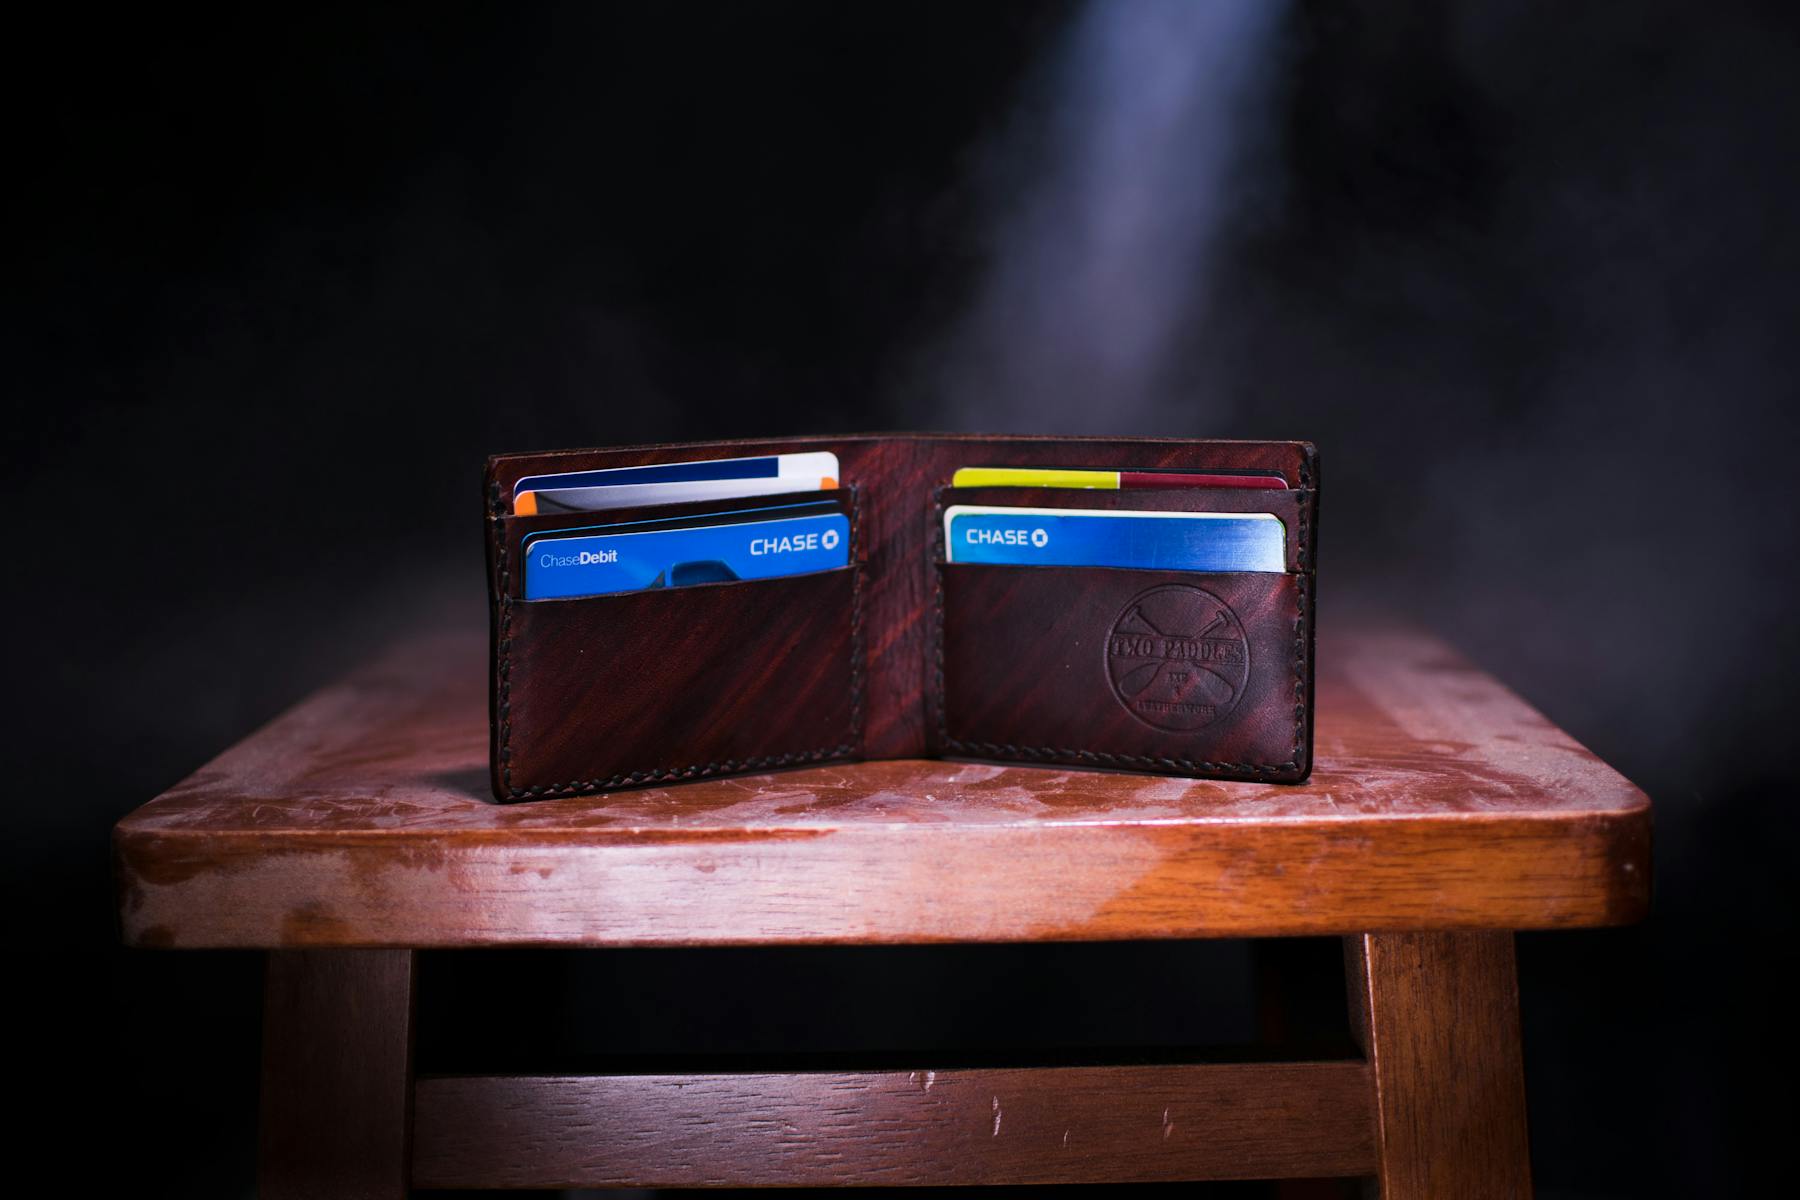 Cards in an open bi-fold leather wallet